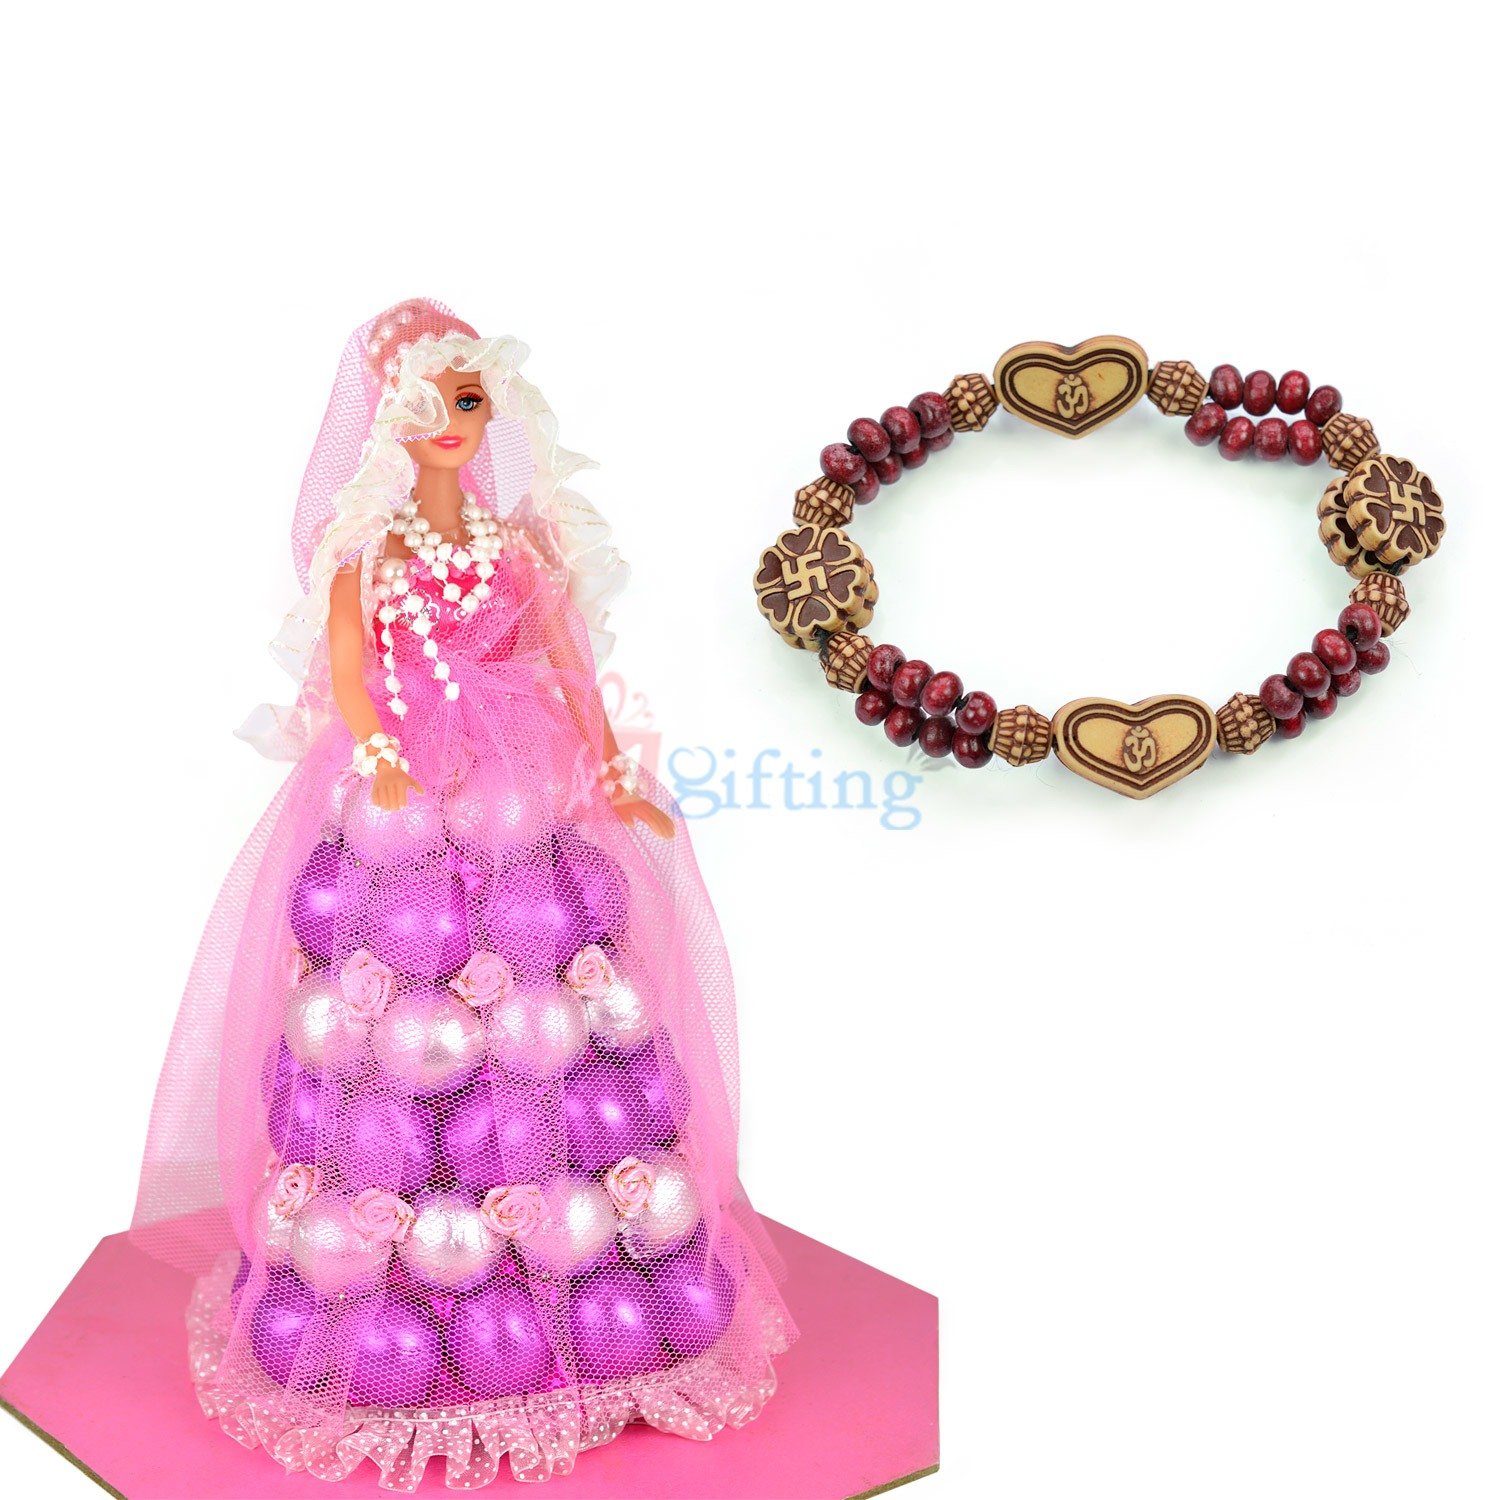 Om Swastik Bracelet with Chocolate Barbie Doll